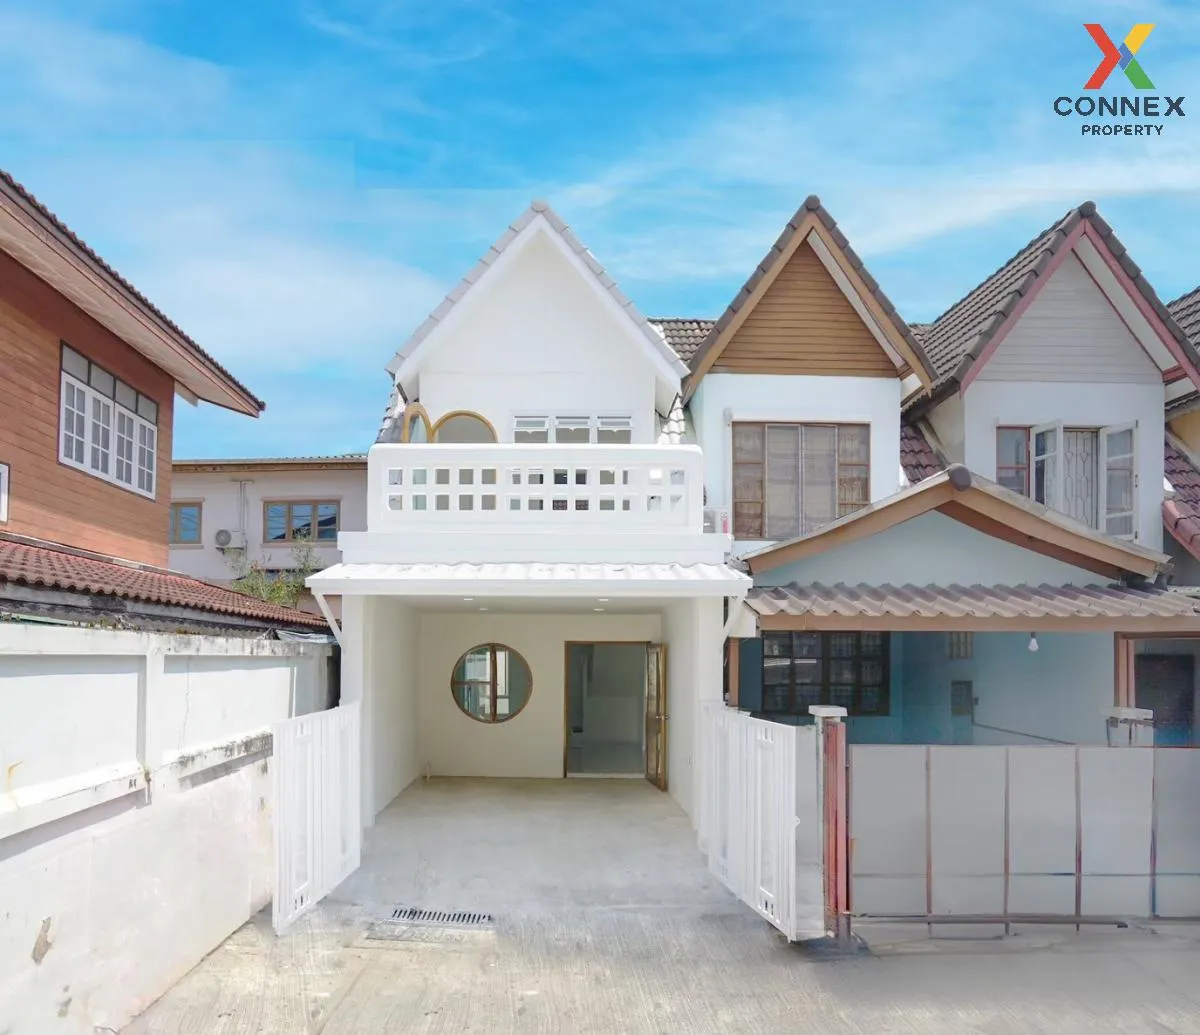 For Sale Townhouse/Townhome  , Bann Parichat , newly renovated , Bang Len , Bang Yai , Nonthaburi , CX-102183